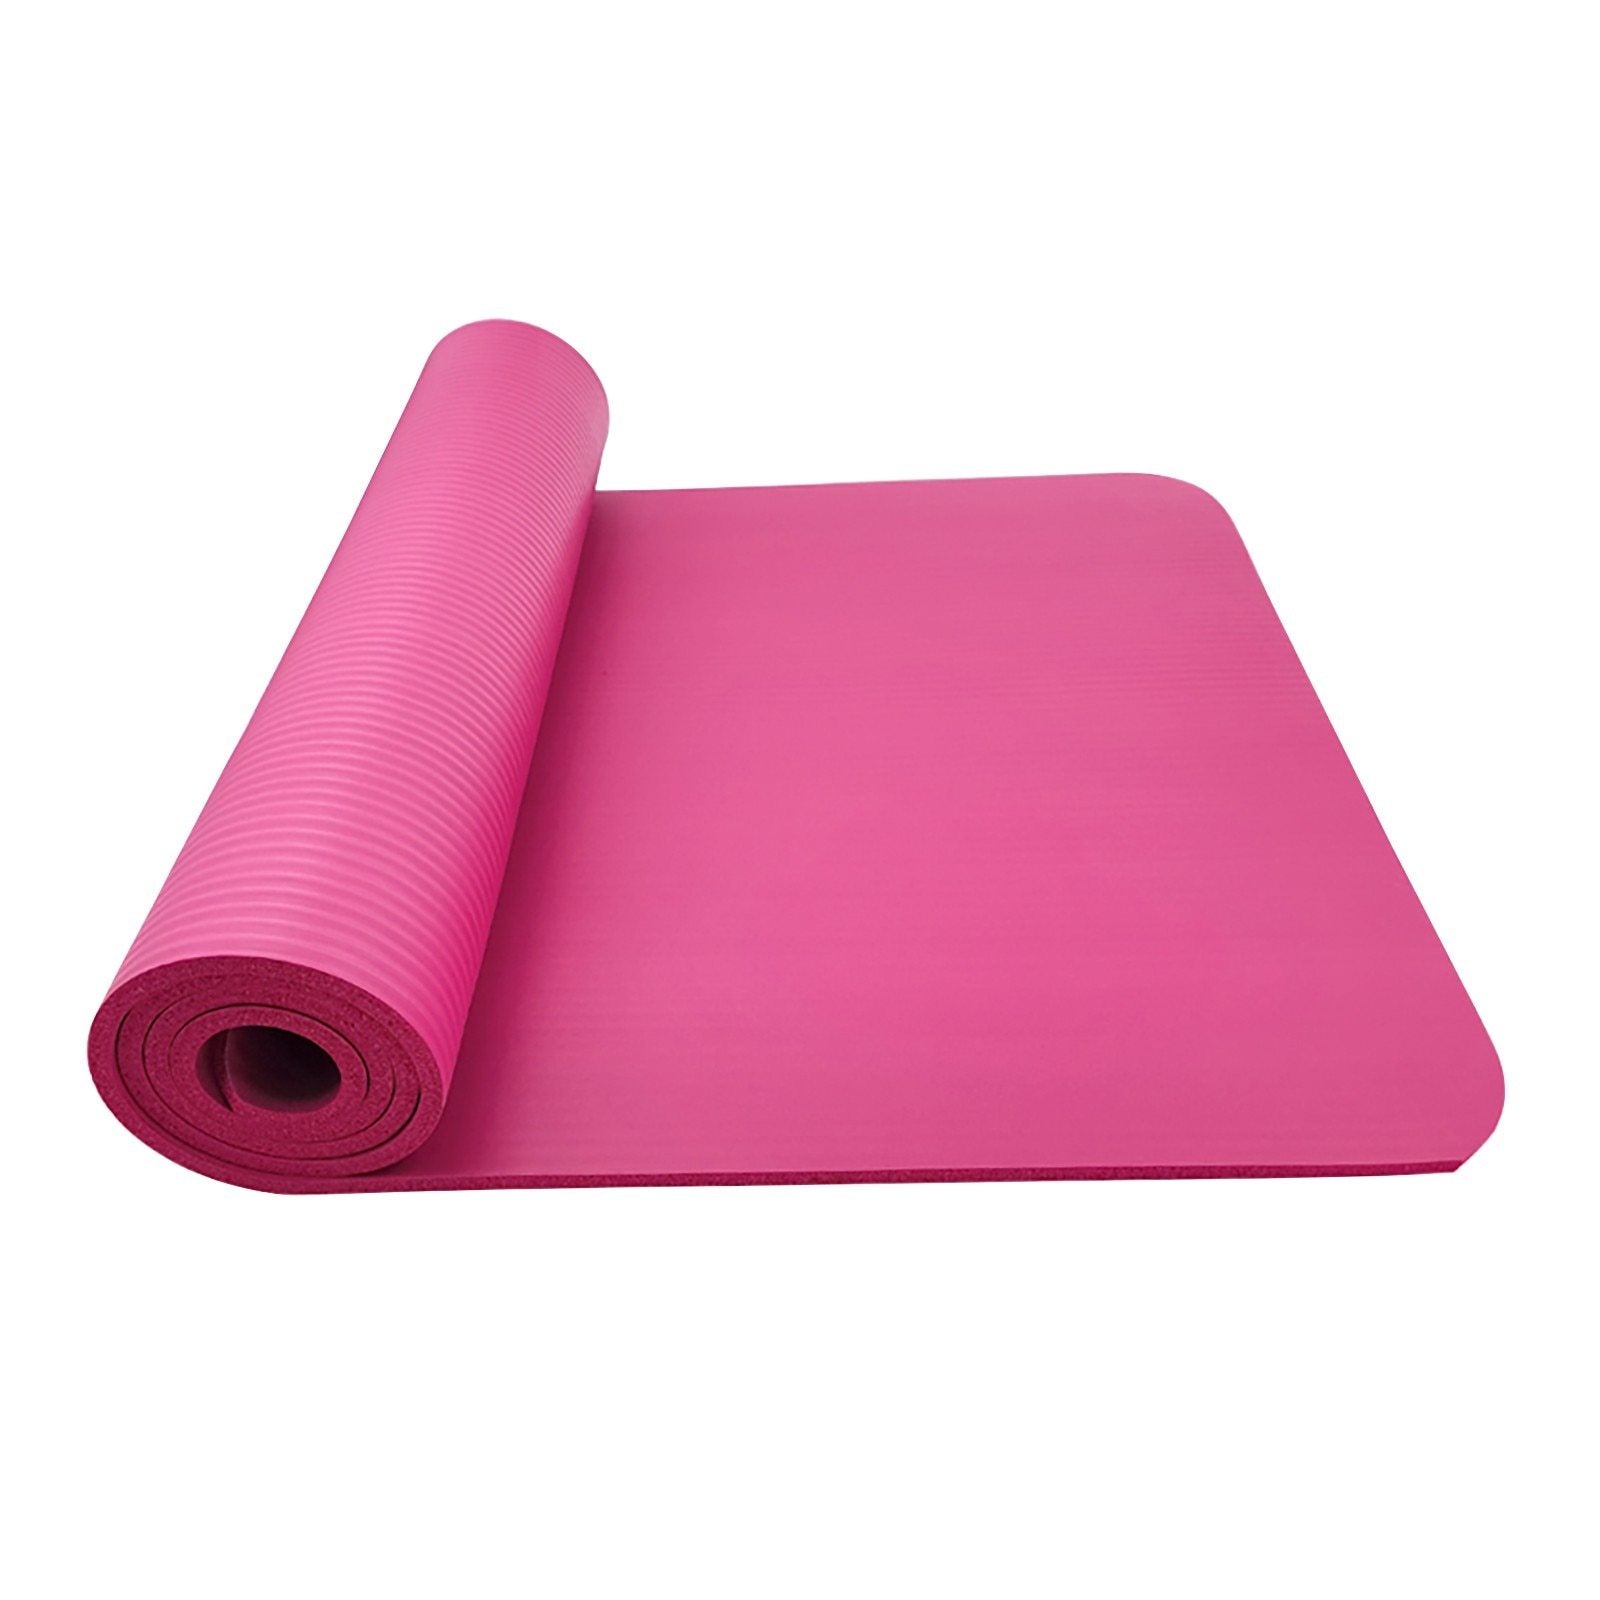 Large Size Non-Slip Yoga Fitness Mat